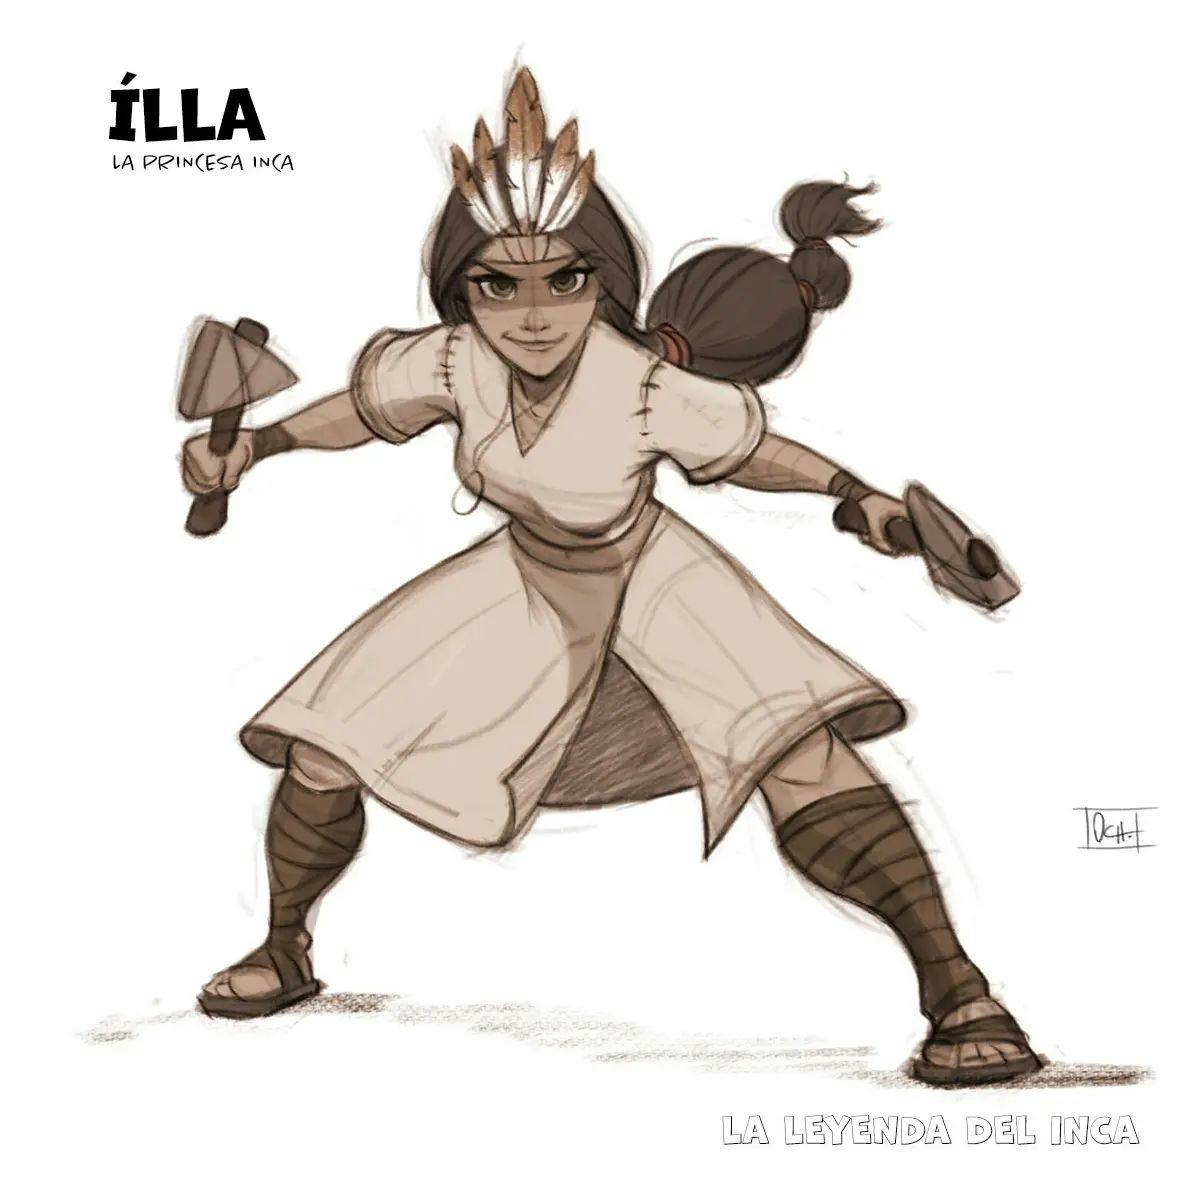 Illustration of Illa